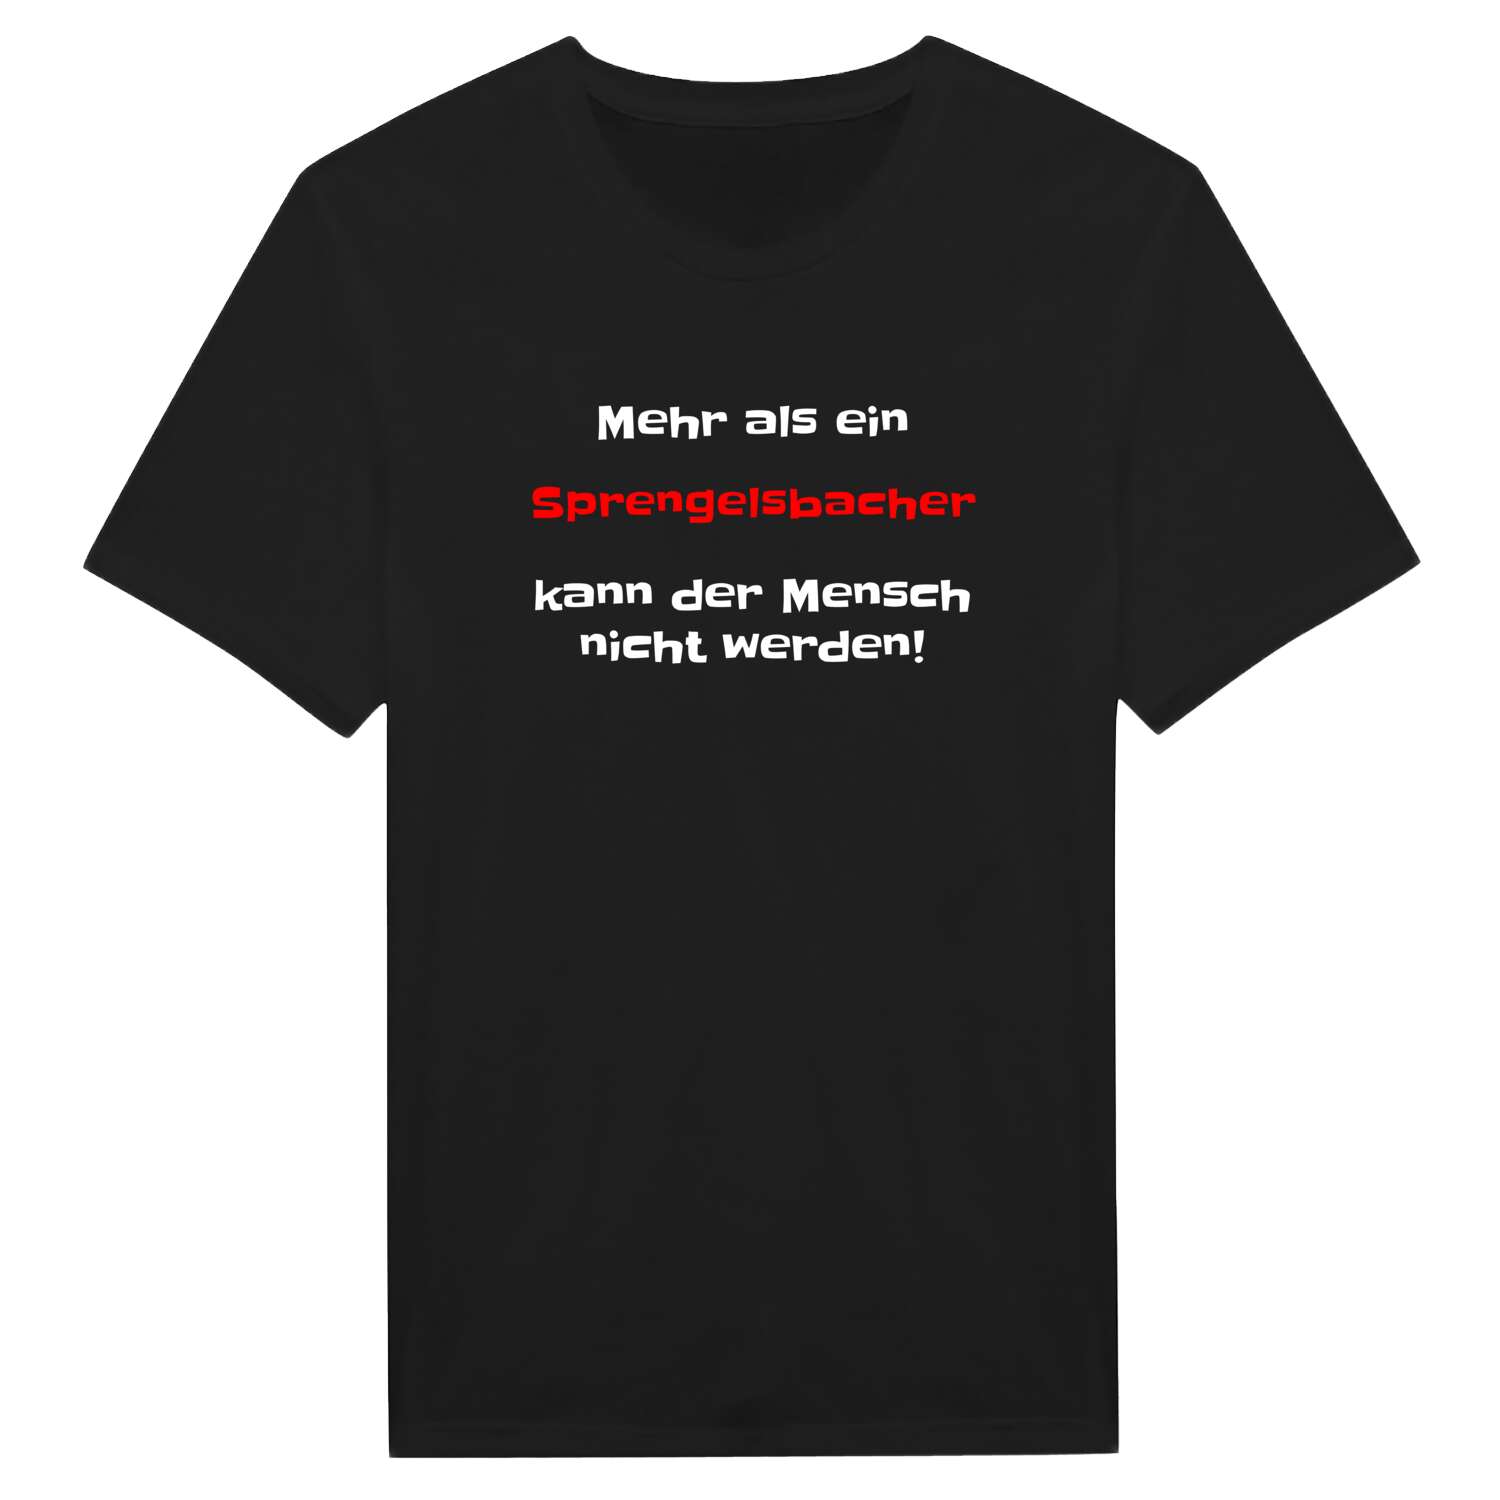 Sprengelsbach T-Shirt »Mehr als ein«